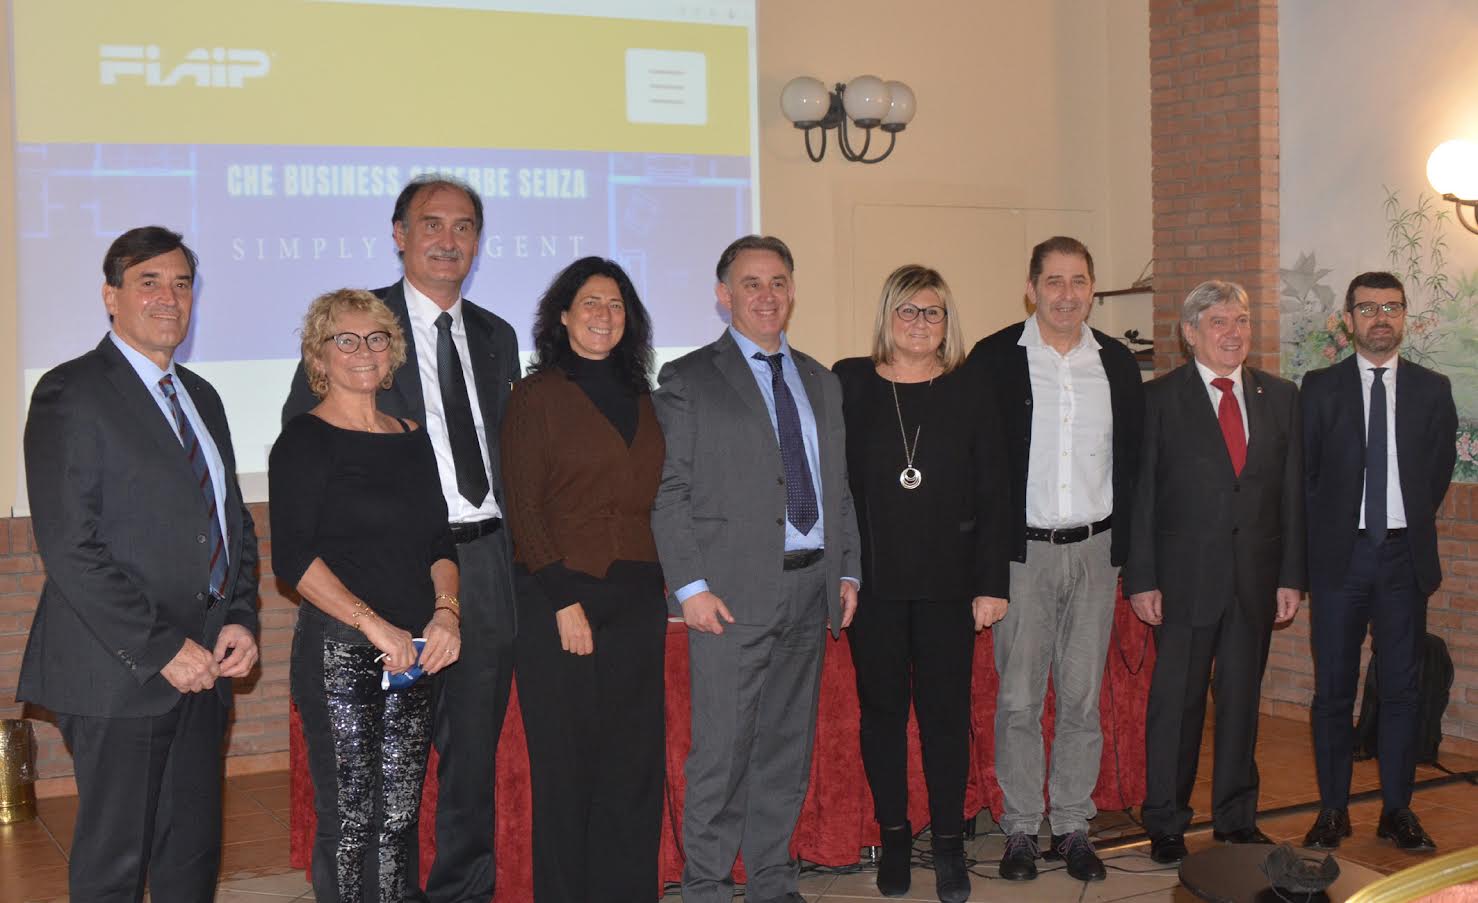 FIAIP: In Lombardia 35 corsi di formazione in tutte le provincie nel 2022